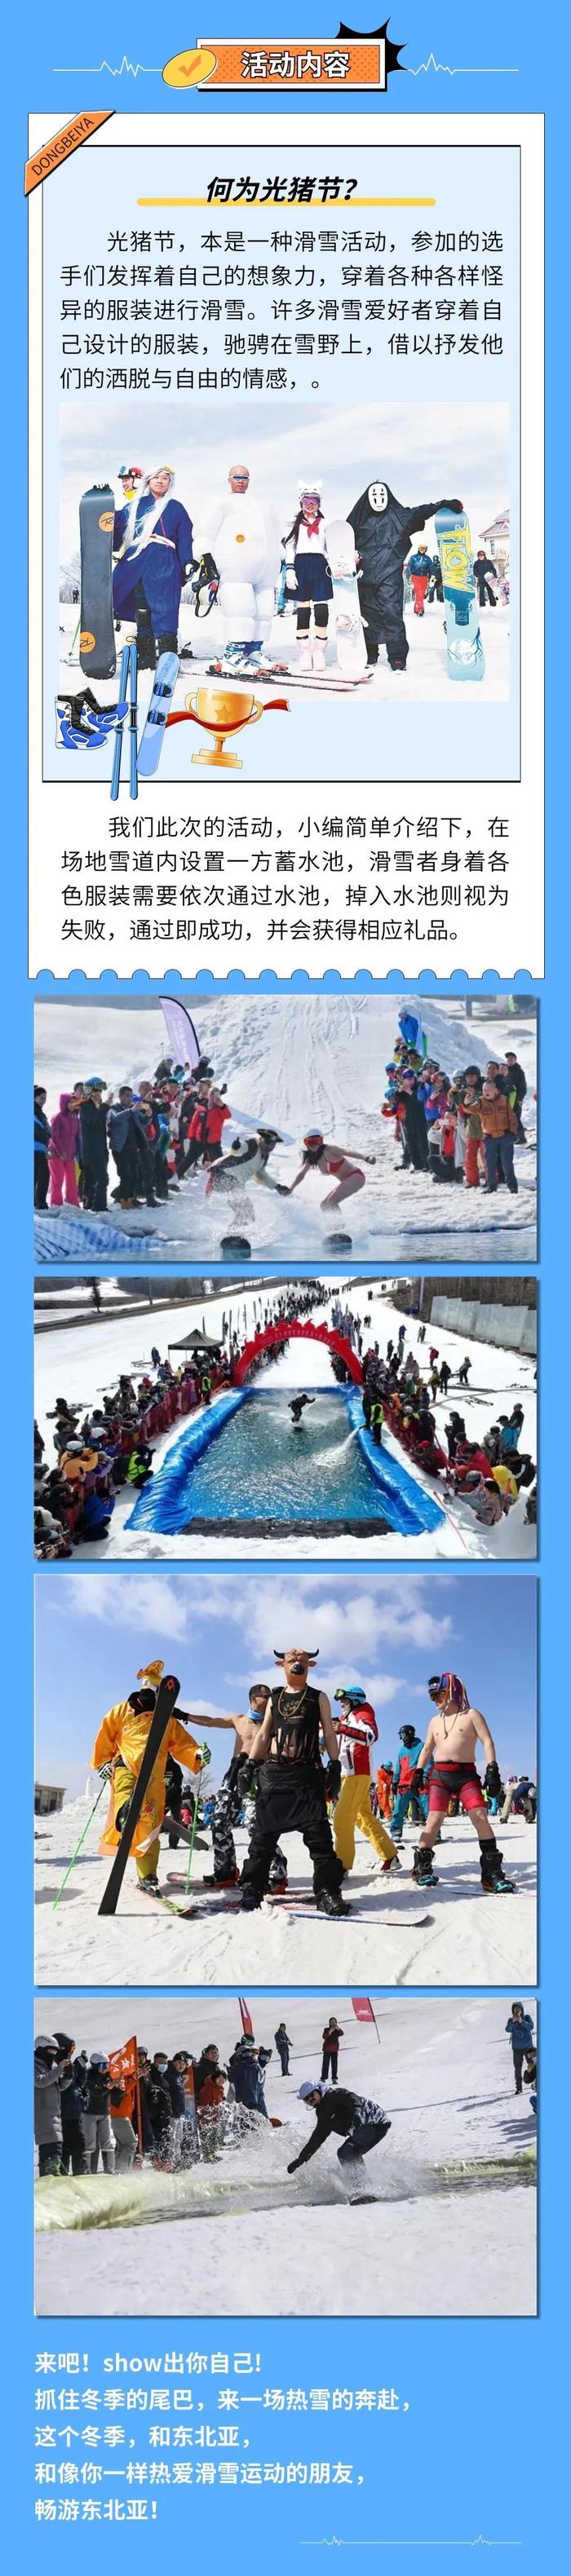 北大壶滑雪场光猪节图片